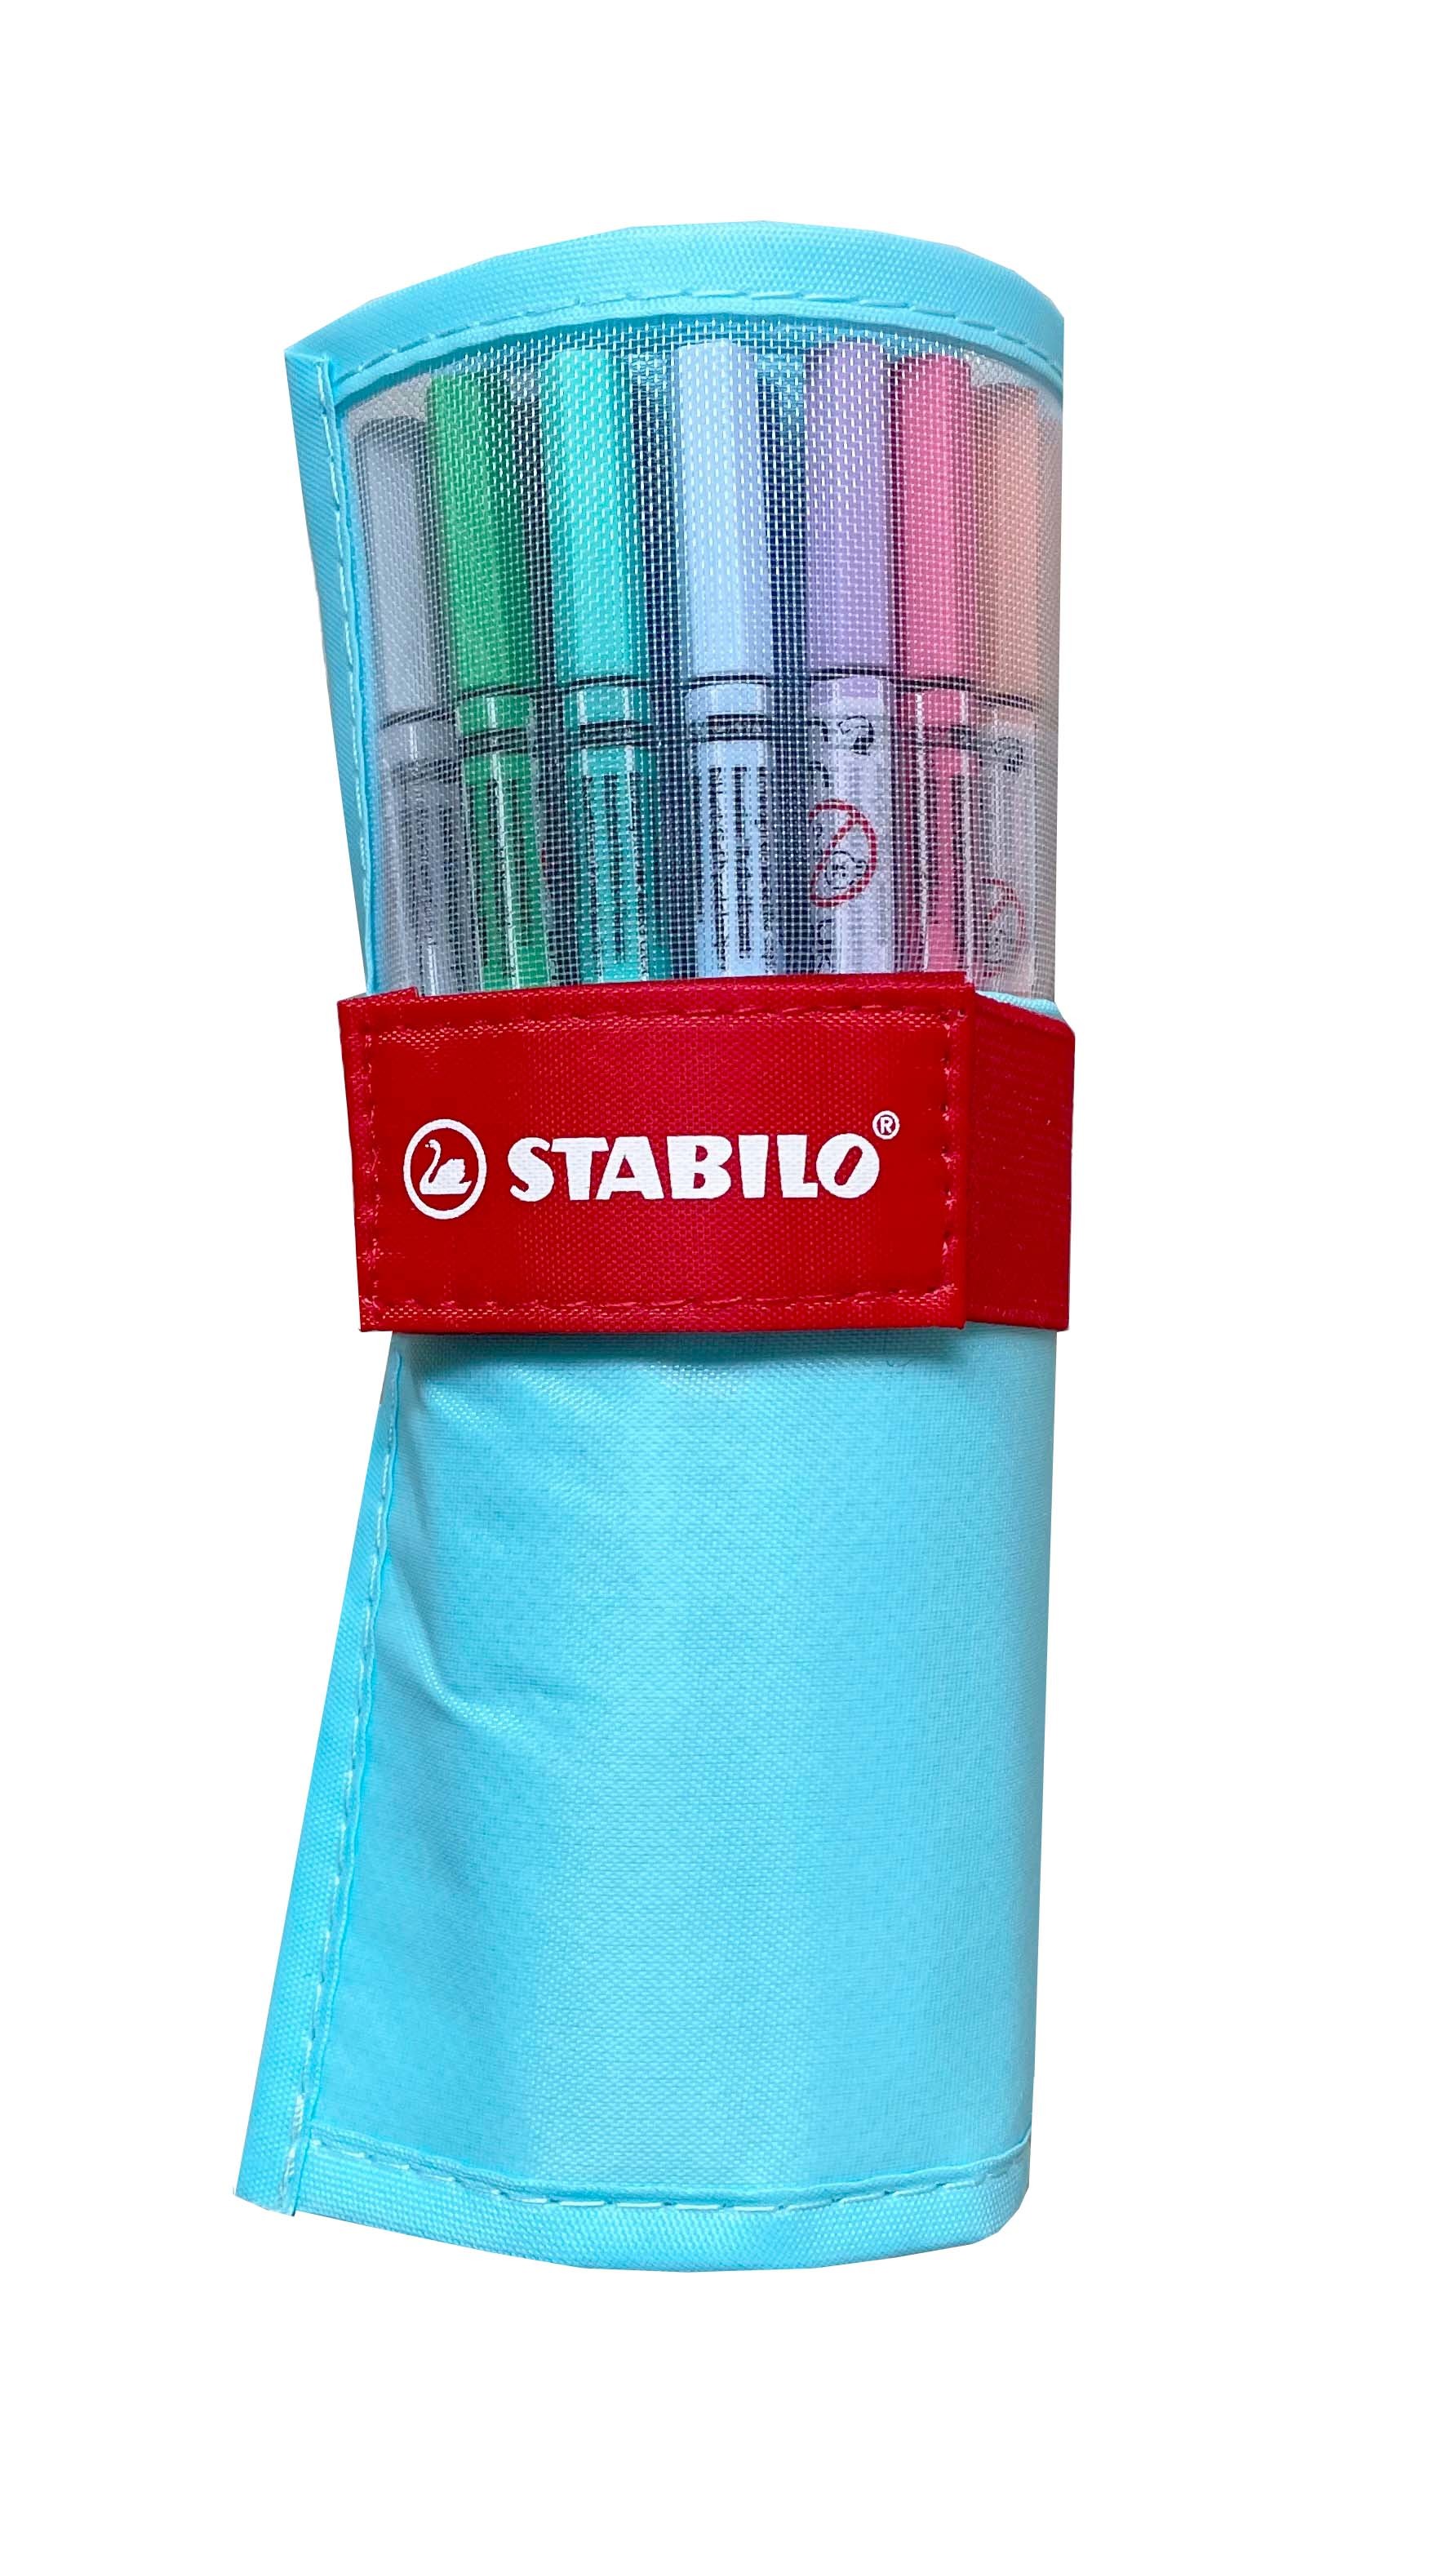 STABILO Rollerset point 68 1.0mm 6825-08-01CH 25 couleurs ass. bleu pastel